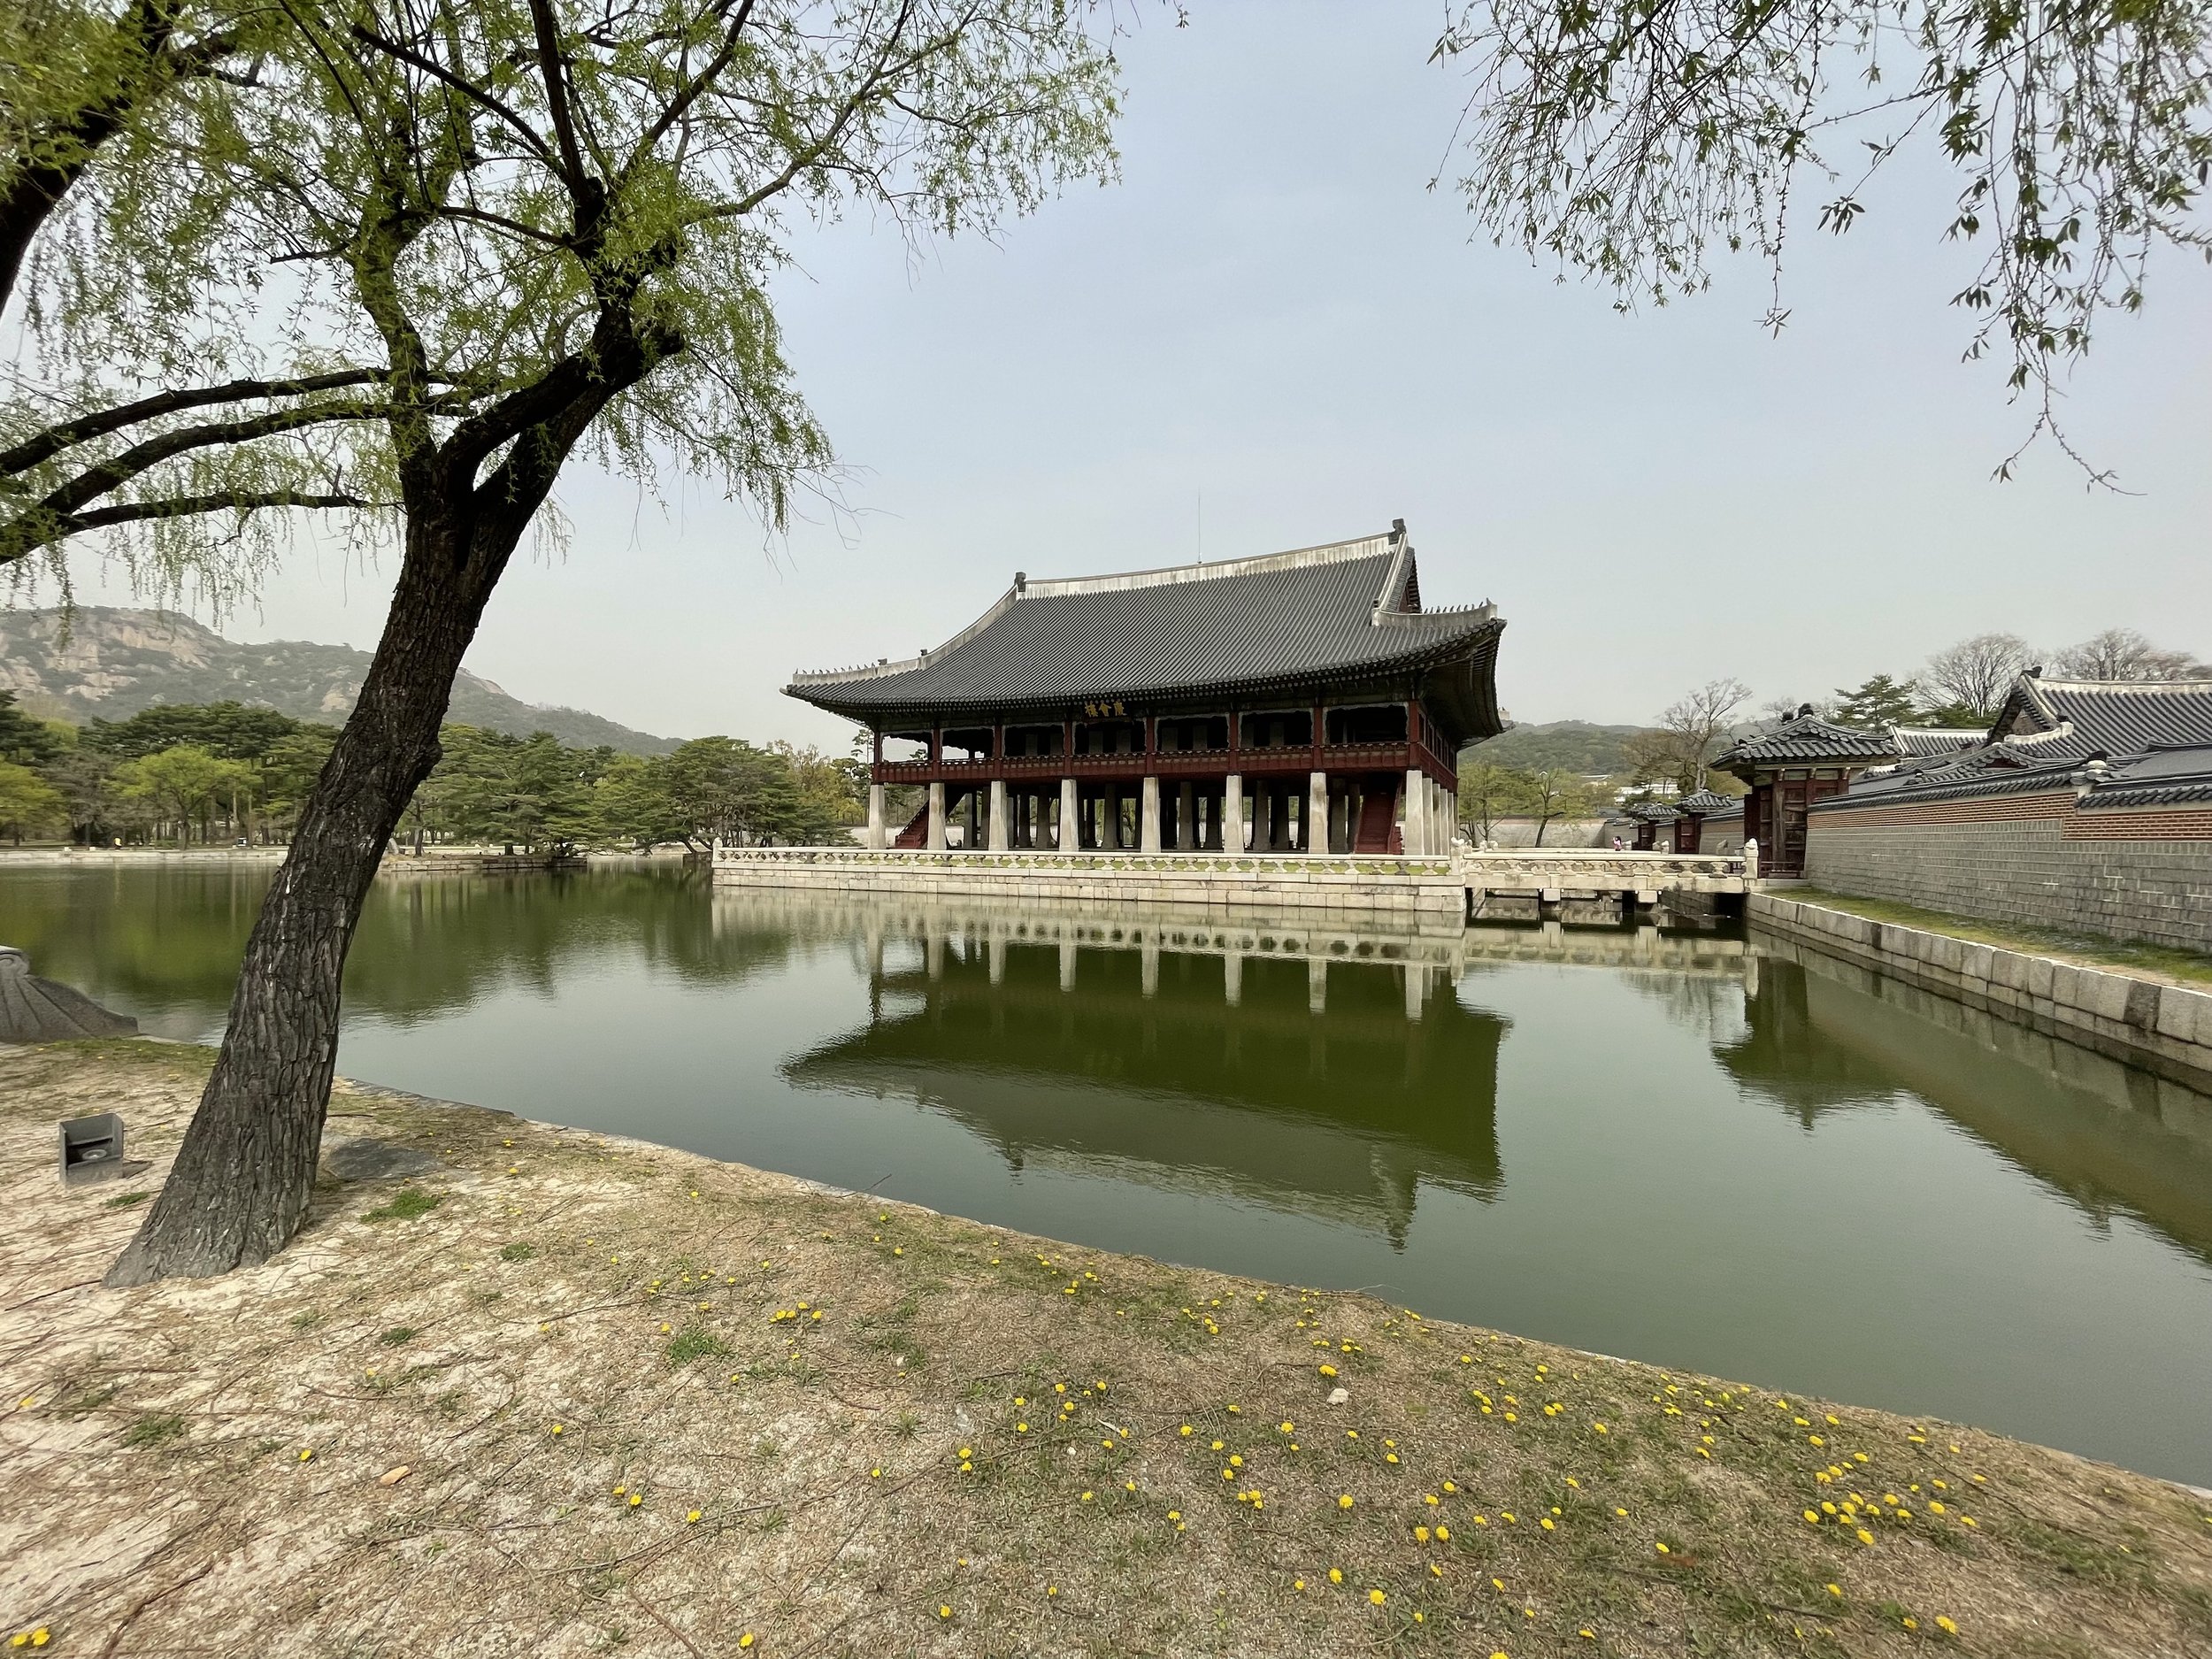 Gyeonghoeru (Royal Banquet Hall), Gyeongbokgung Palace